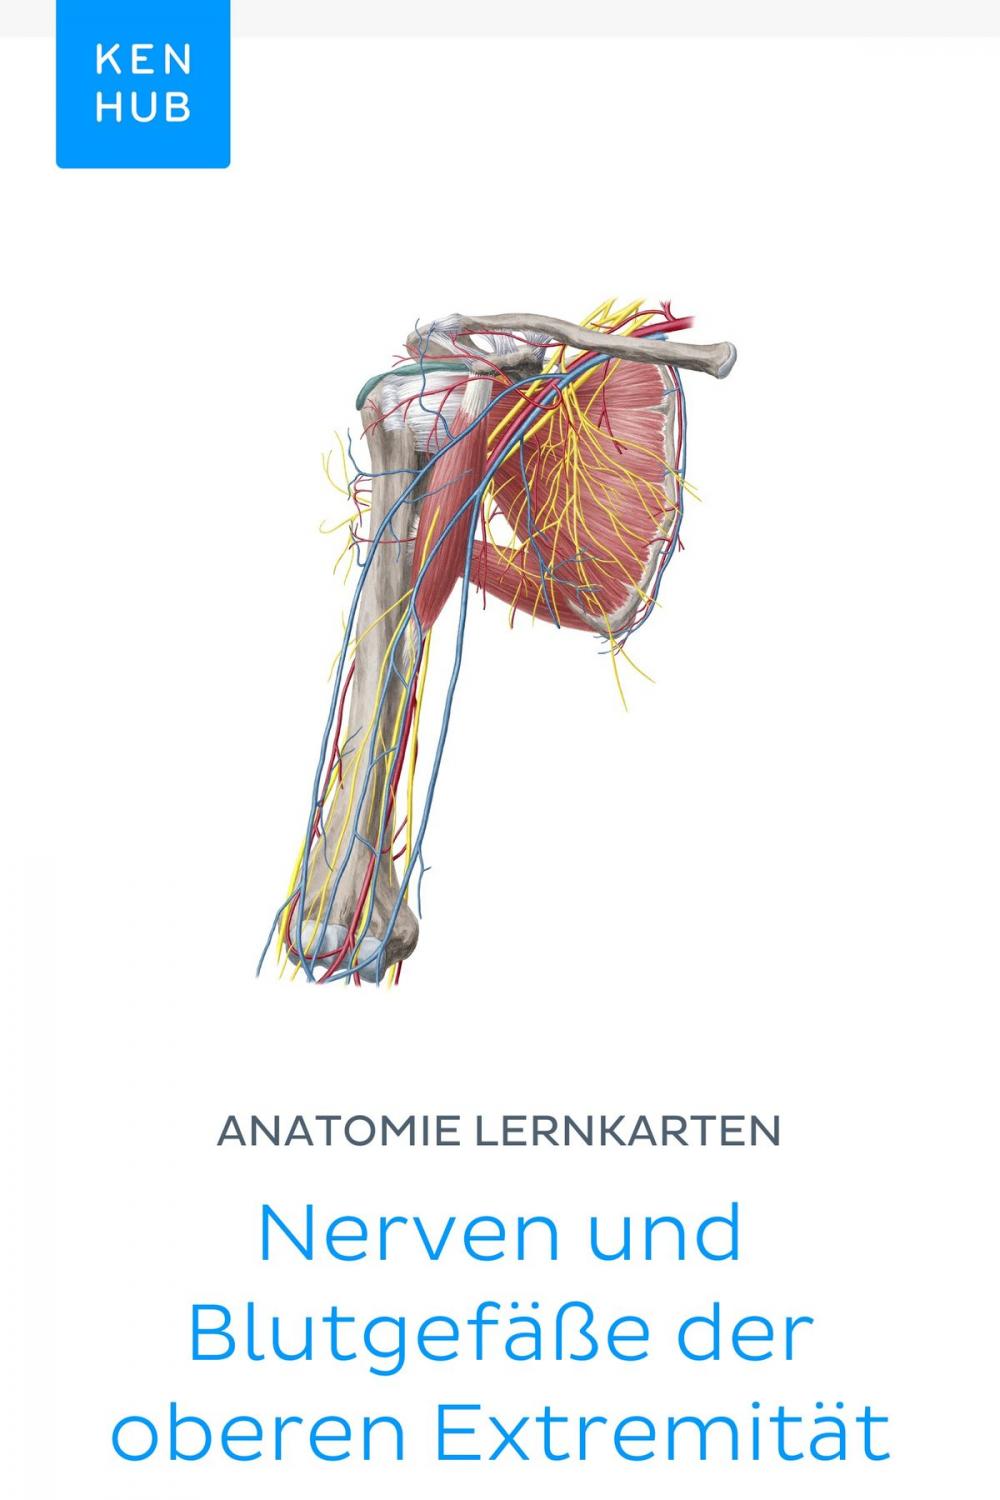 Big bigCover of Anatomie Lernkarten: Nerven und Blutgefäße der oberen Extremität